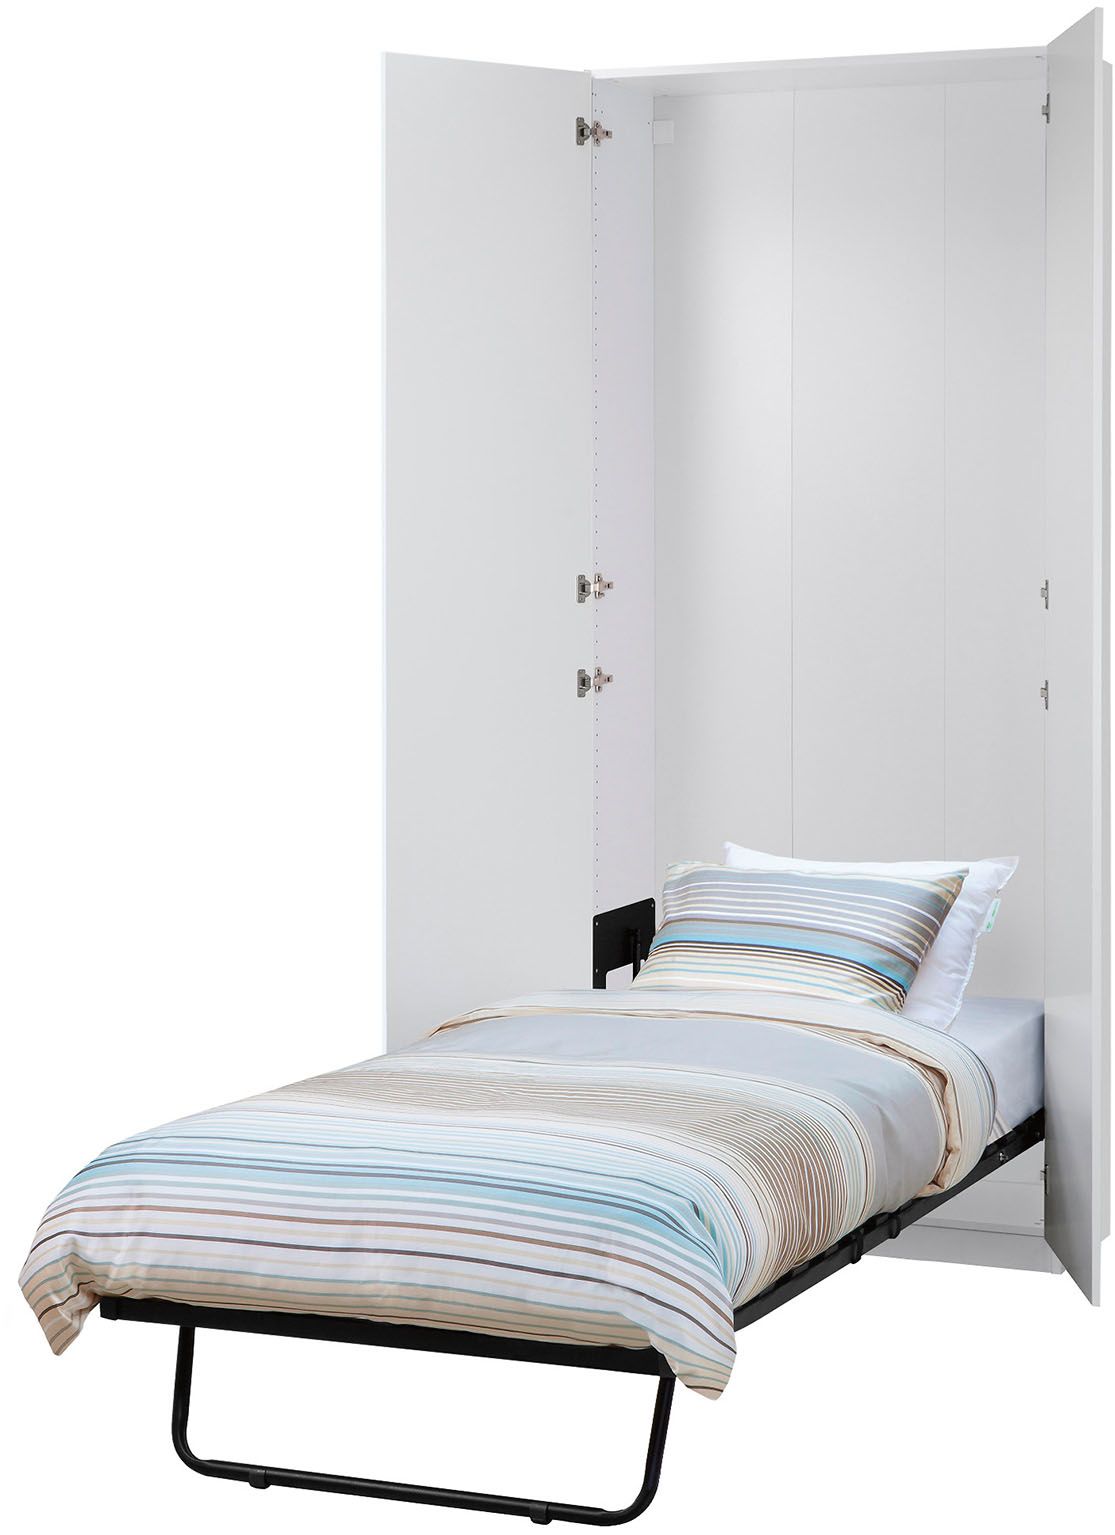 V případě absence ložnice a velkého nedostatku prostoru si můžeme pořídit postel sklápěnou do skříně. Cena 7590 Kč.